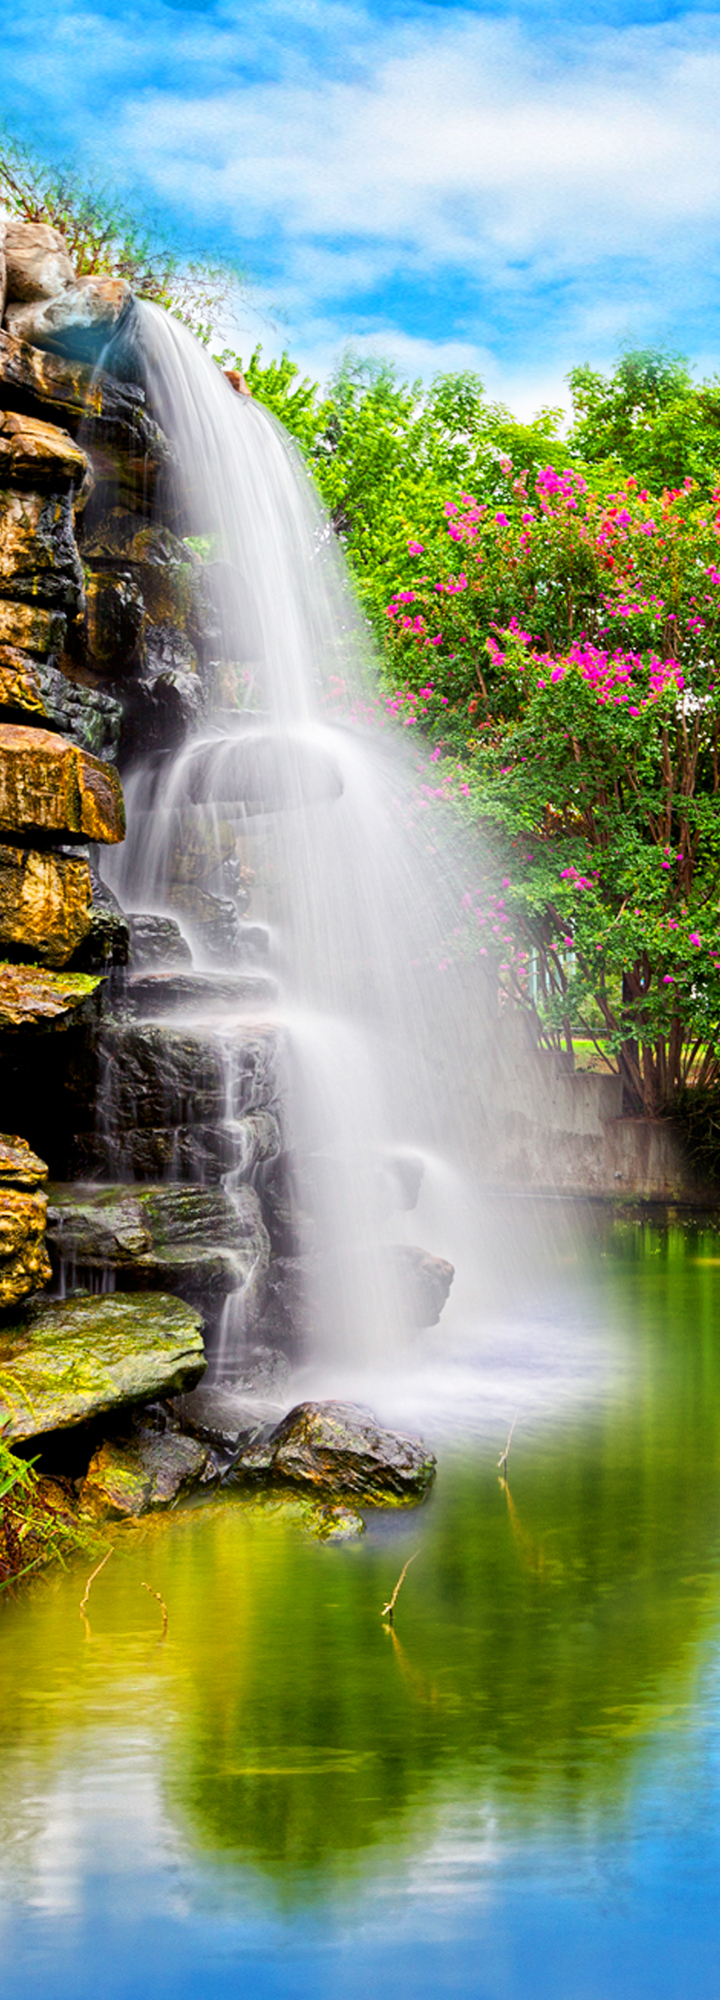 Nghe tiếng nước chảy reo rắt từ những thác nước đẹp nhất Việt Nam, bạn có thể tưởng tượng được cảm giác thư giãn và tinh tế đến từ thiên nhiên xanh tươi. Hãy cùng đón chào khoảnh khắc tuyệt vời này với chúng tôi.